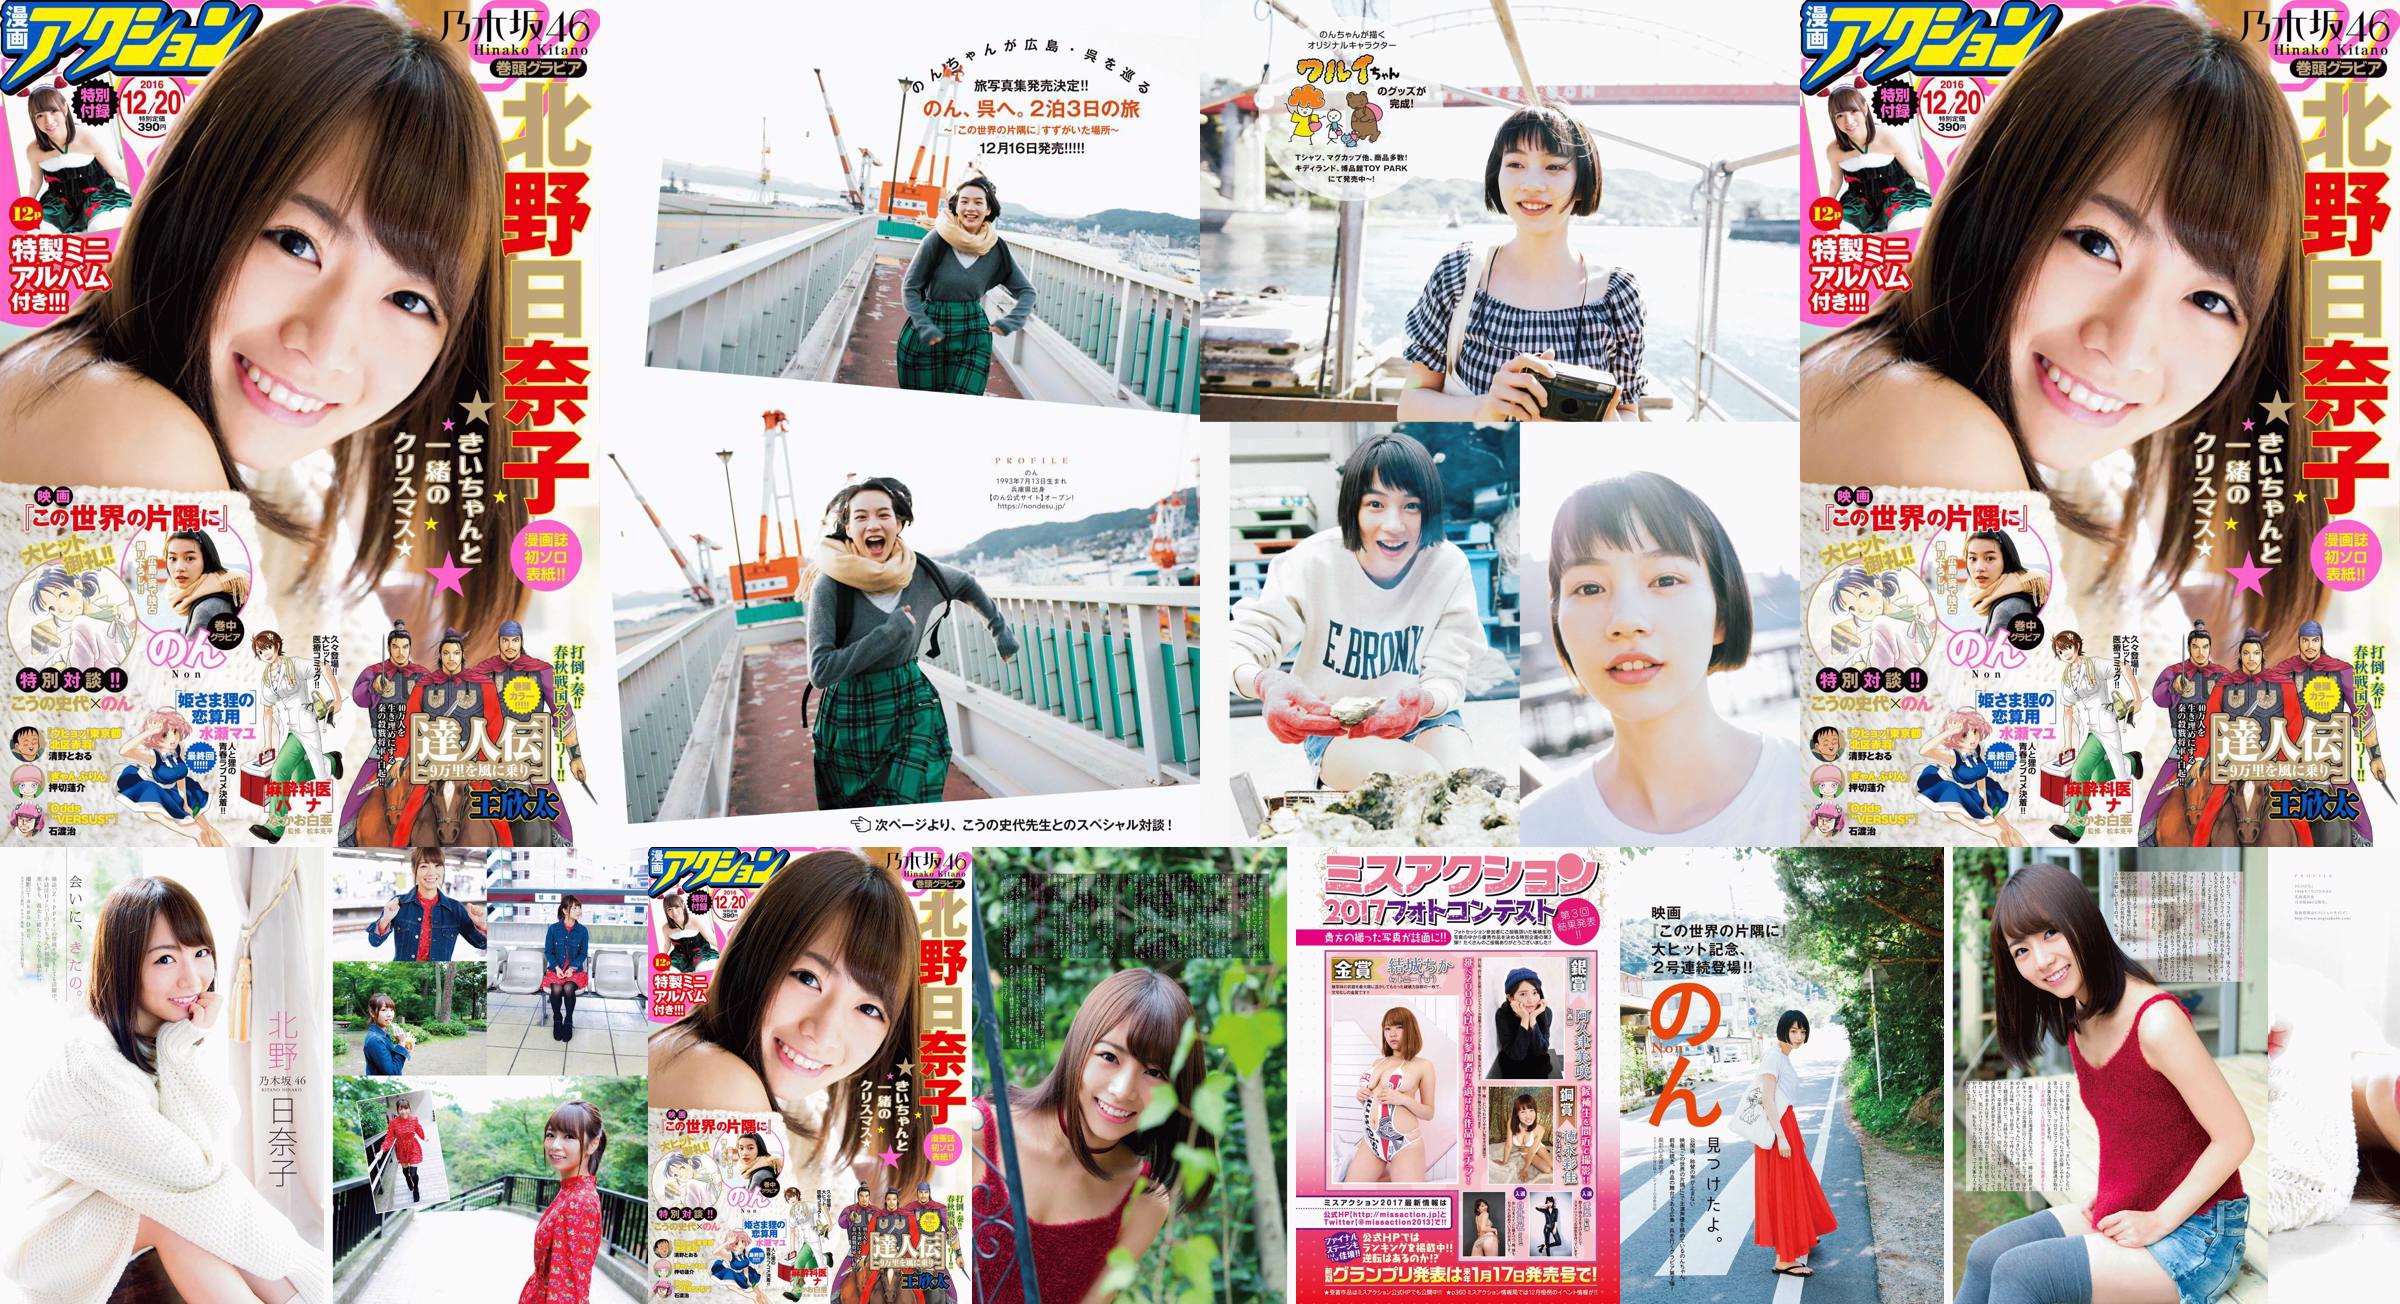 [Manga Action] Kitano Hinako のん 2016 No.24 Photo Magazine No.ce40a1 Page 67